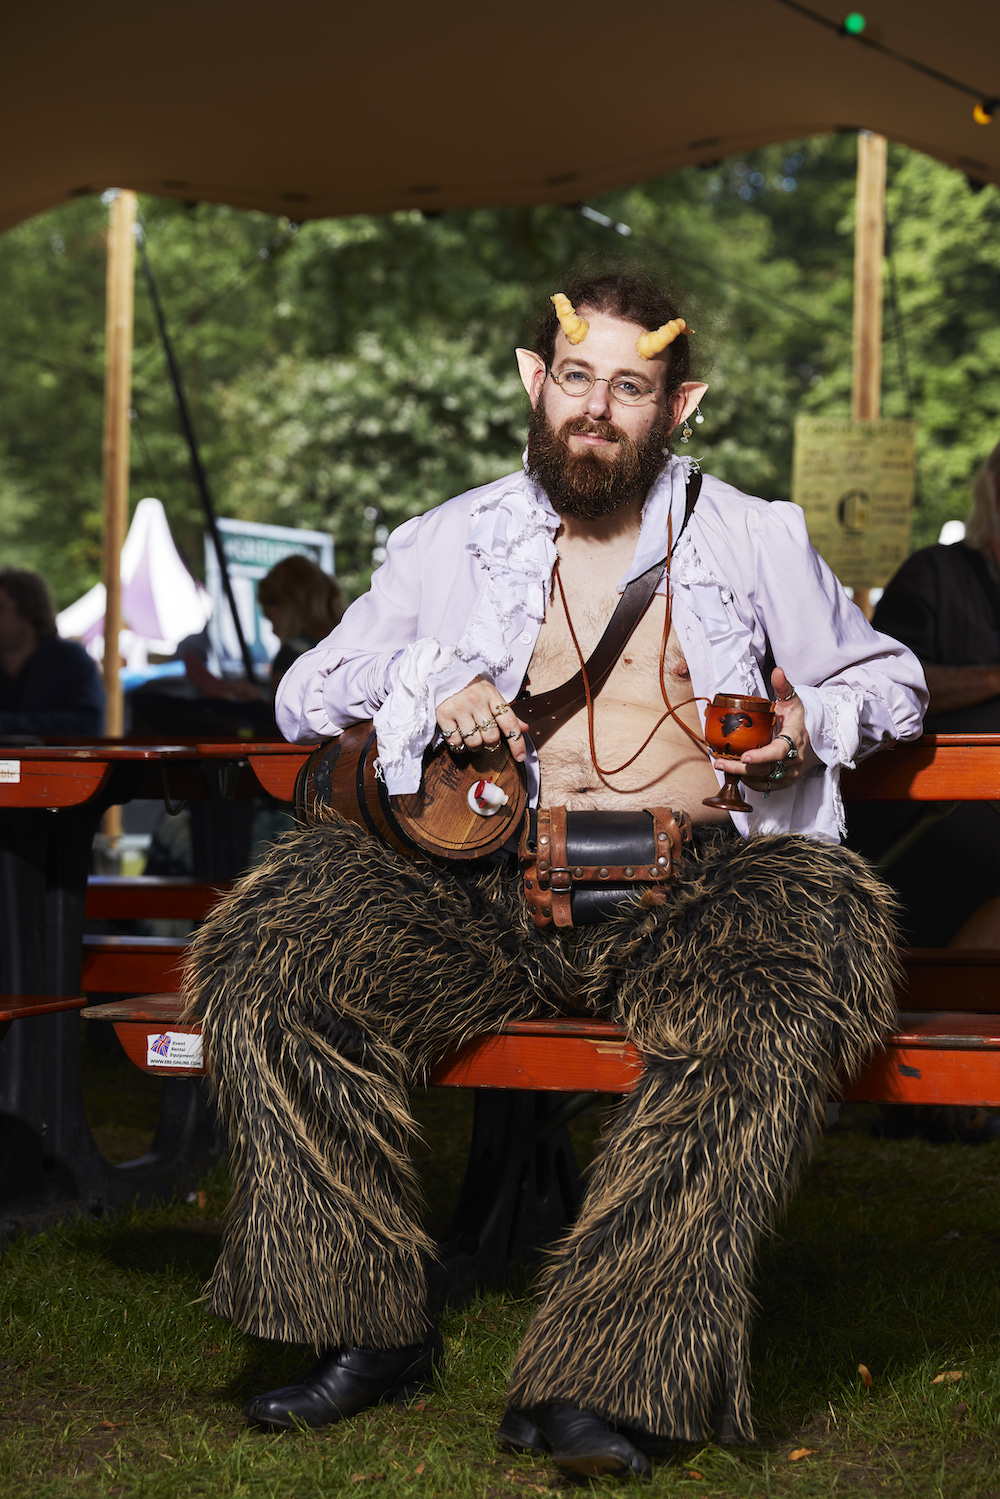 Ein Mann mit Bart, Hörnern und Fellhose sitz mit offenem Hemd auf einer Bank und hält ein Weinglas, er hat ein kleines Fass umgehangen